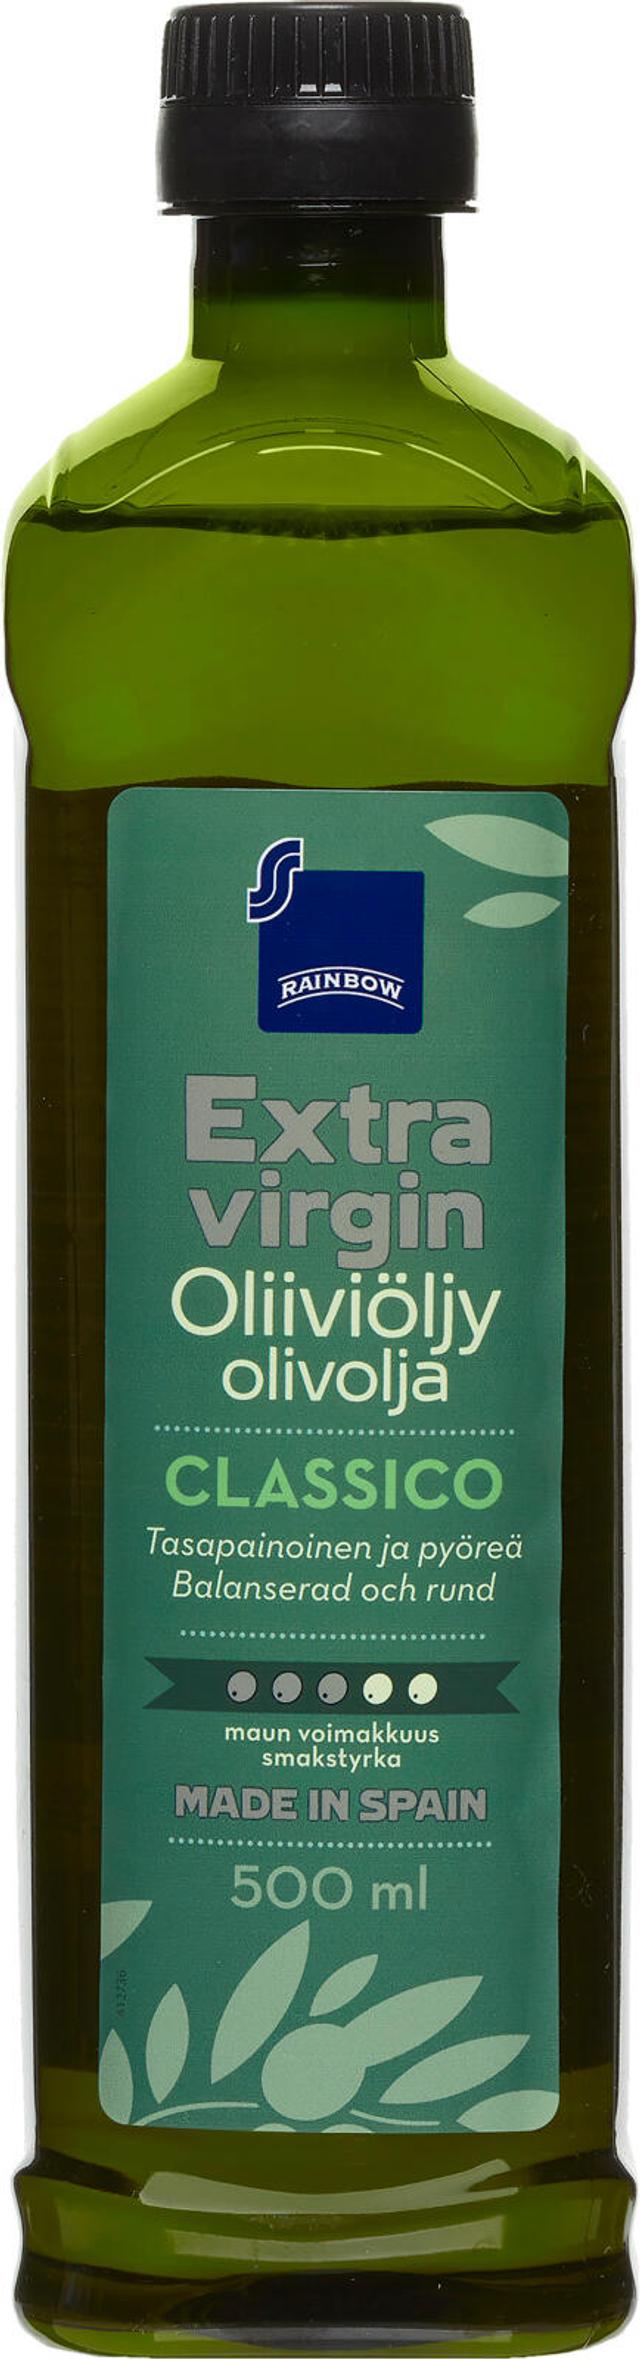 Rainbow 500ml Classico extra virgin oliiviöljy